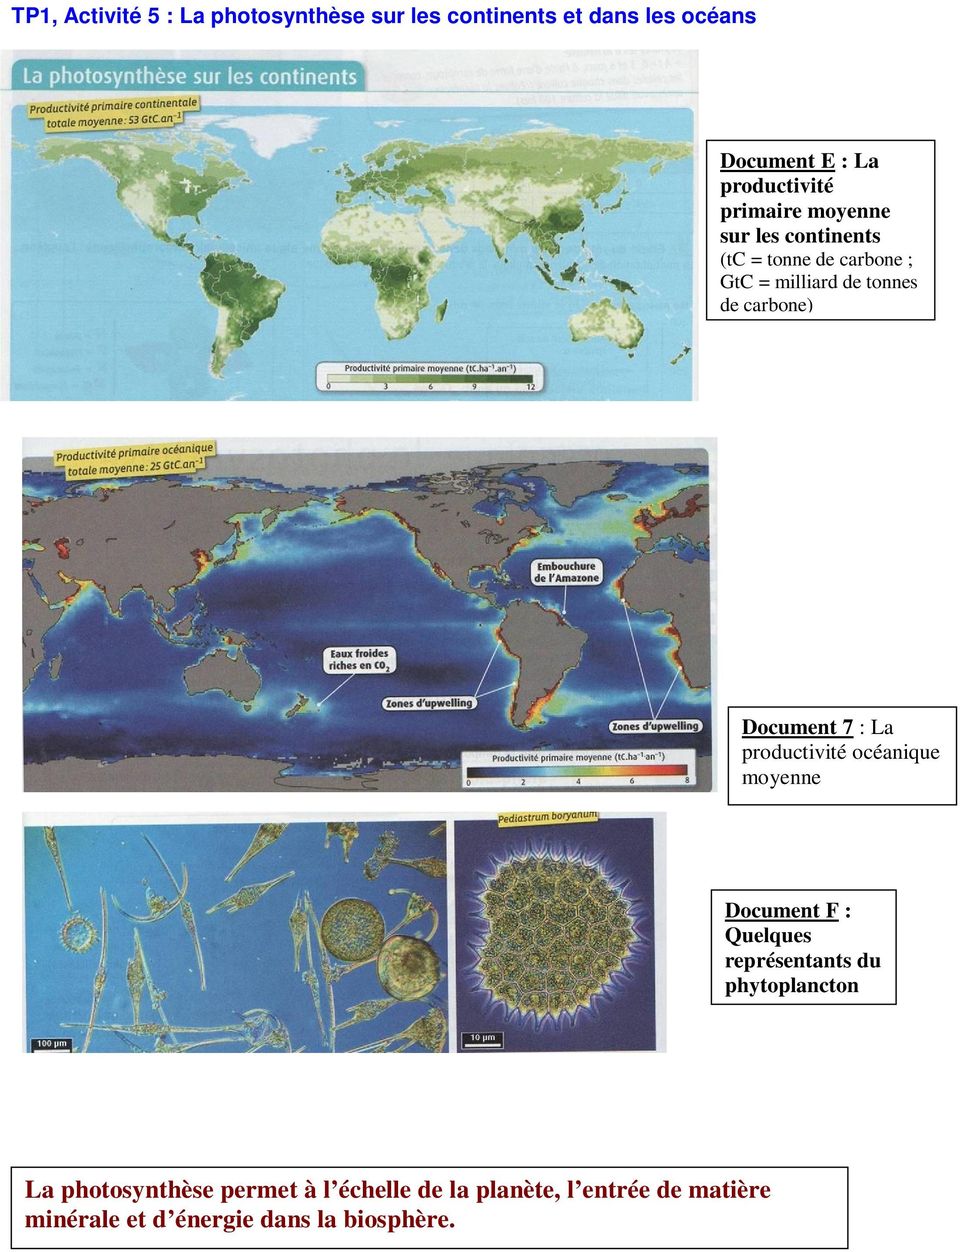 Document 7 : La productivité océanique moyenne Document F : Quelques représentants du phytoplancton La